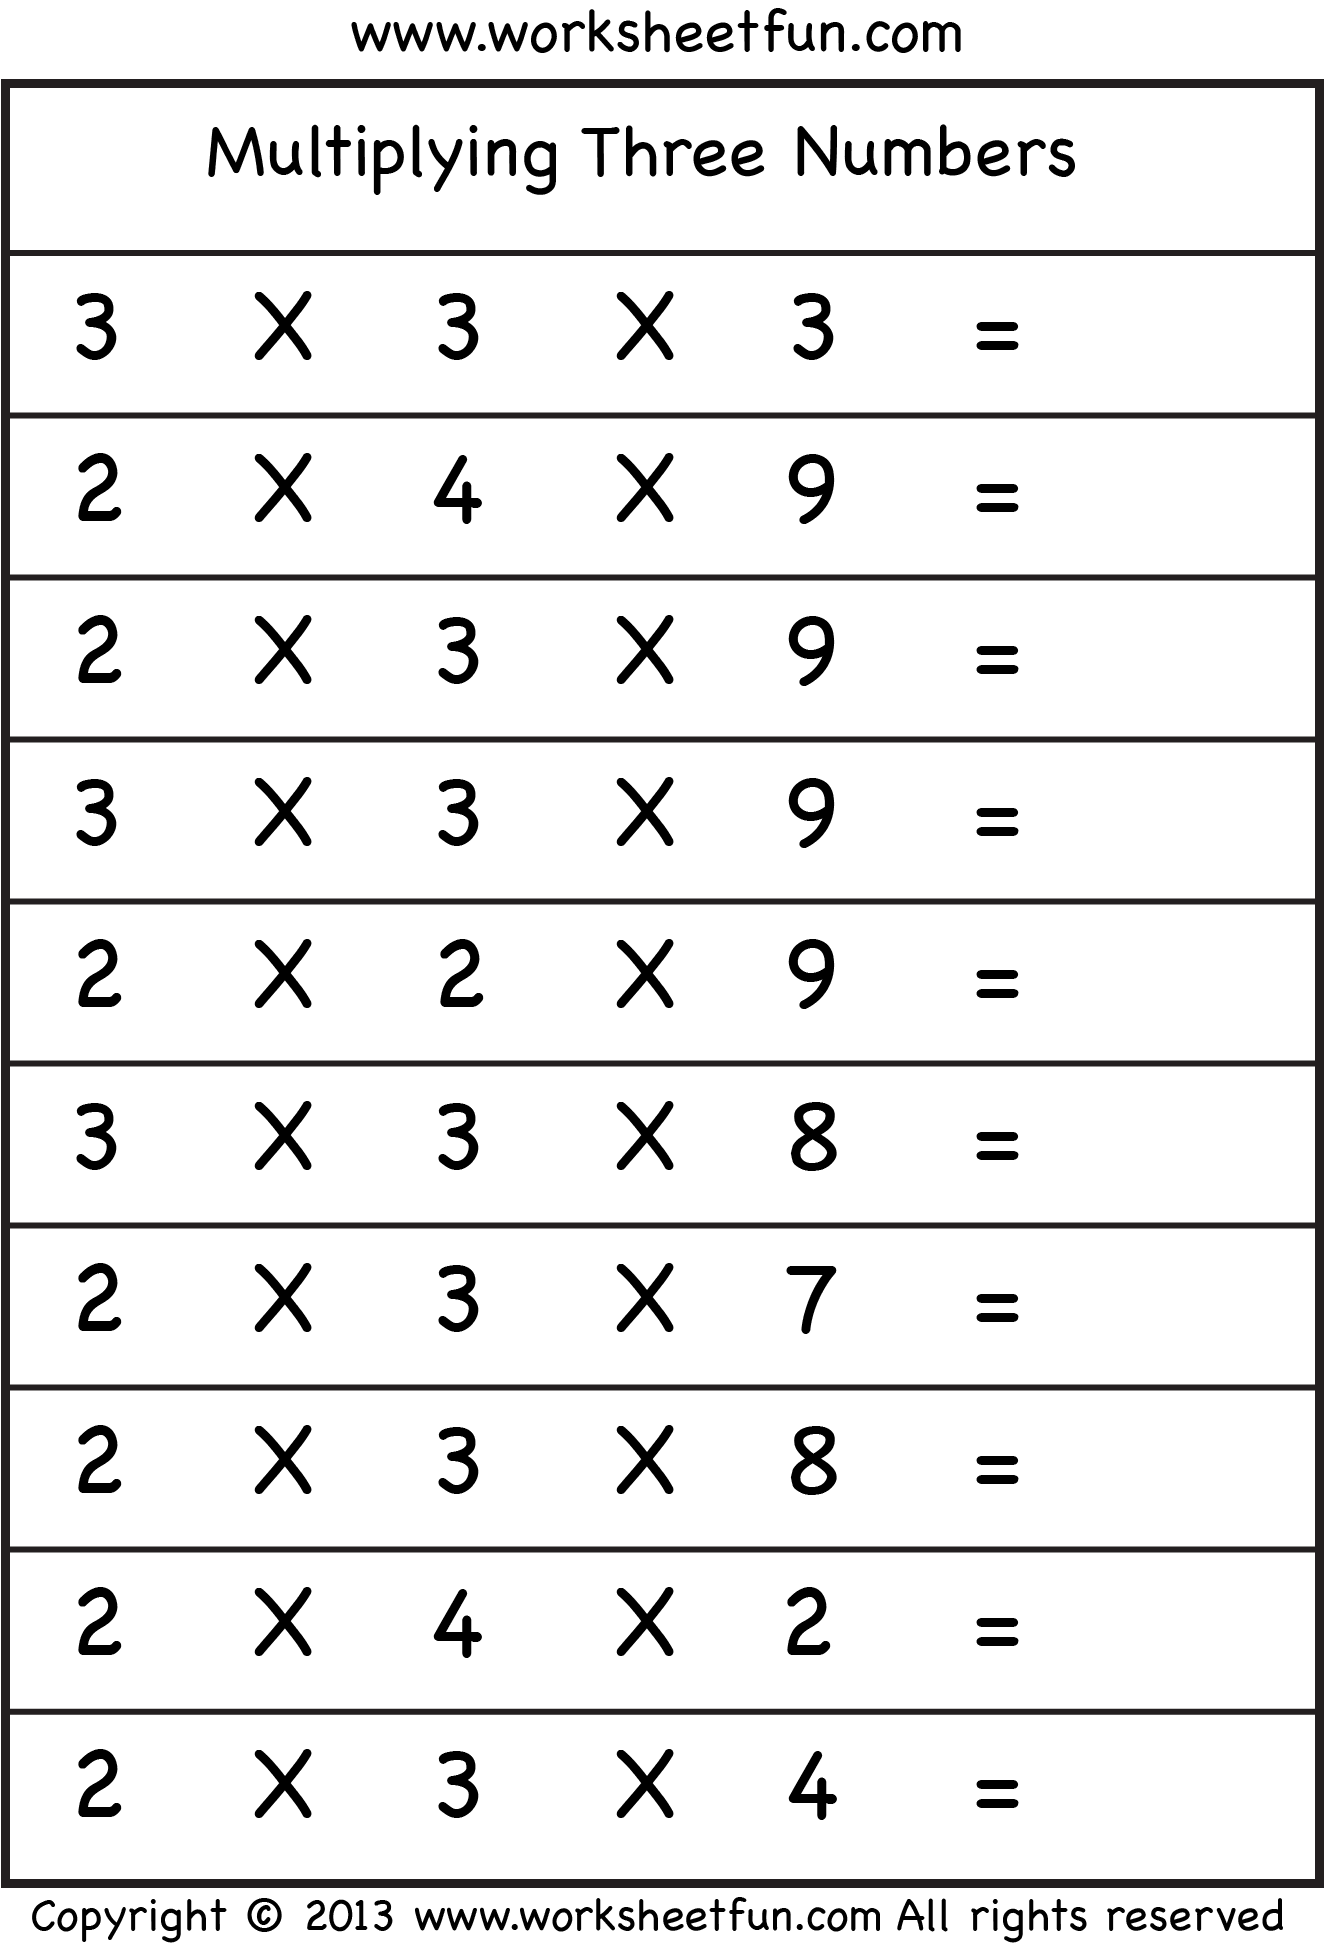 Multiplying 3 Numbers Three Worksheets FREE Printable Worksheets Worksheetfun